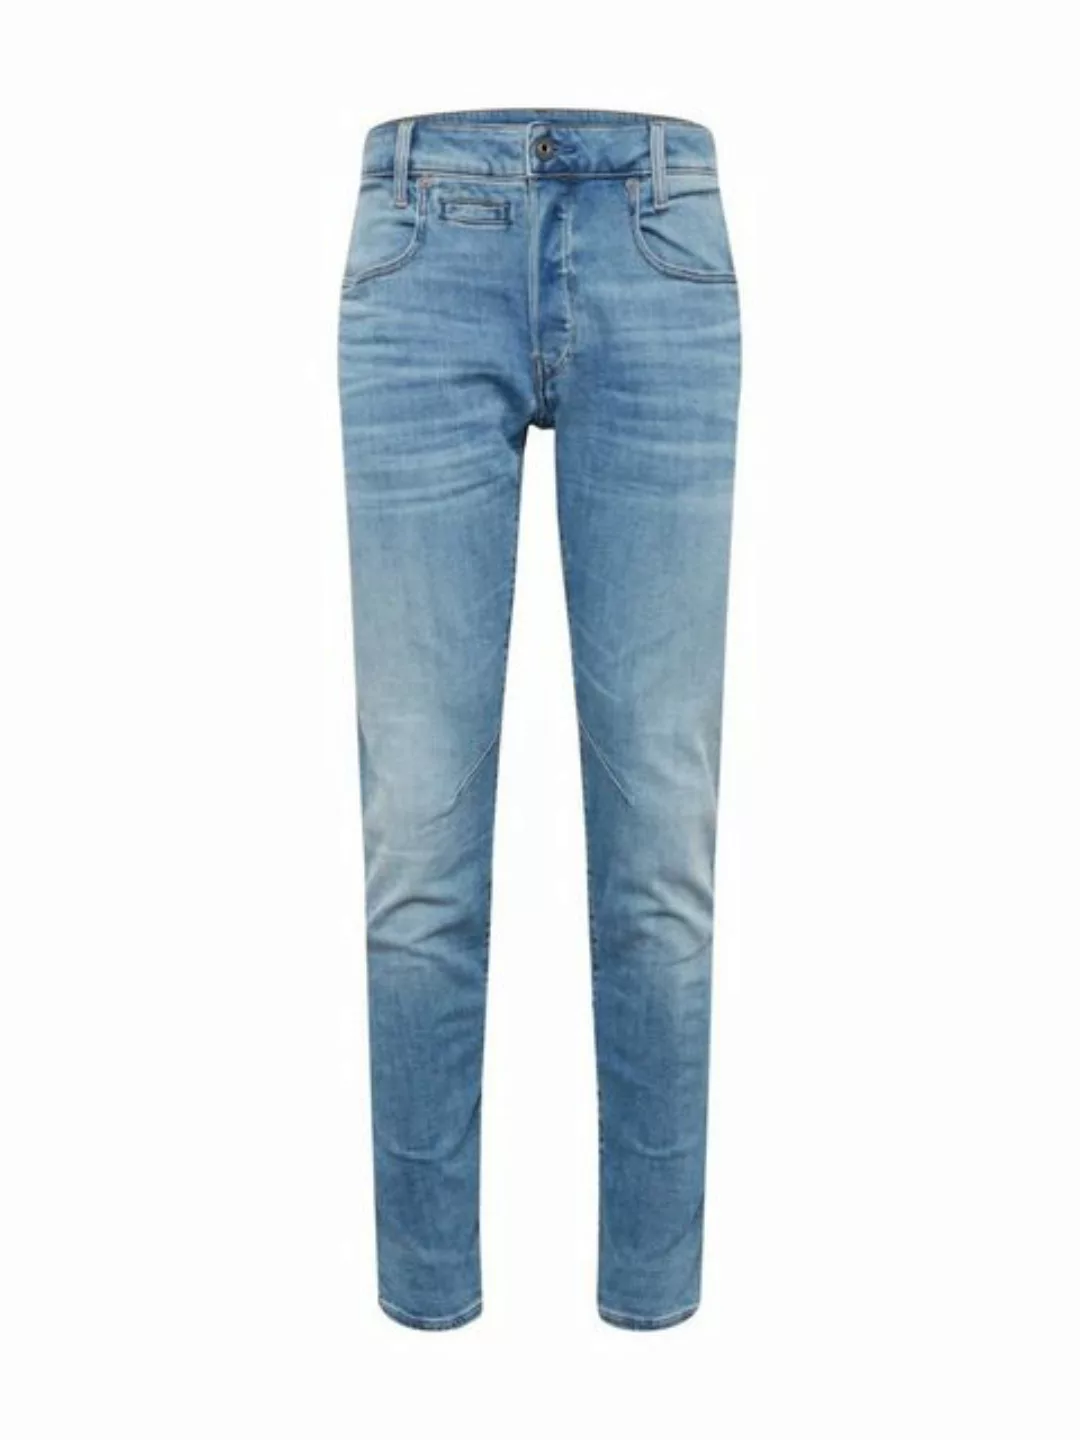 G-star D-staq 5 Pocket Slim Jeans 34 Light Indigo Aged günstig online kaufen